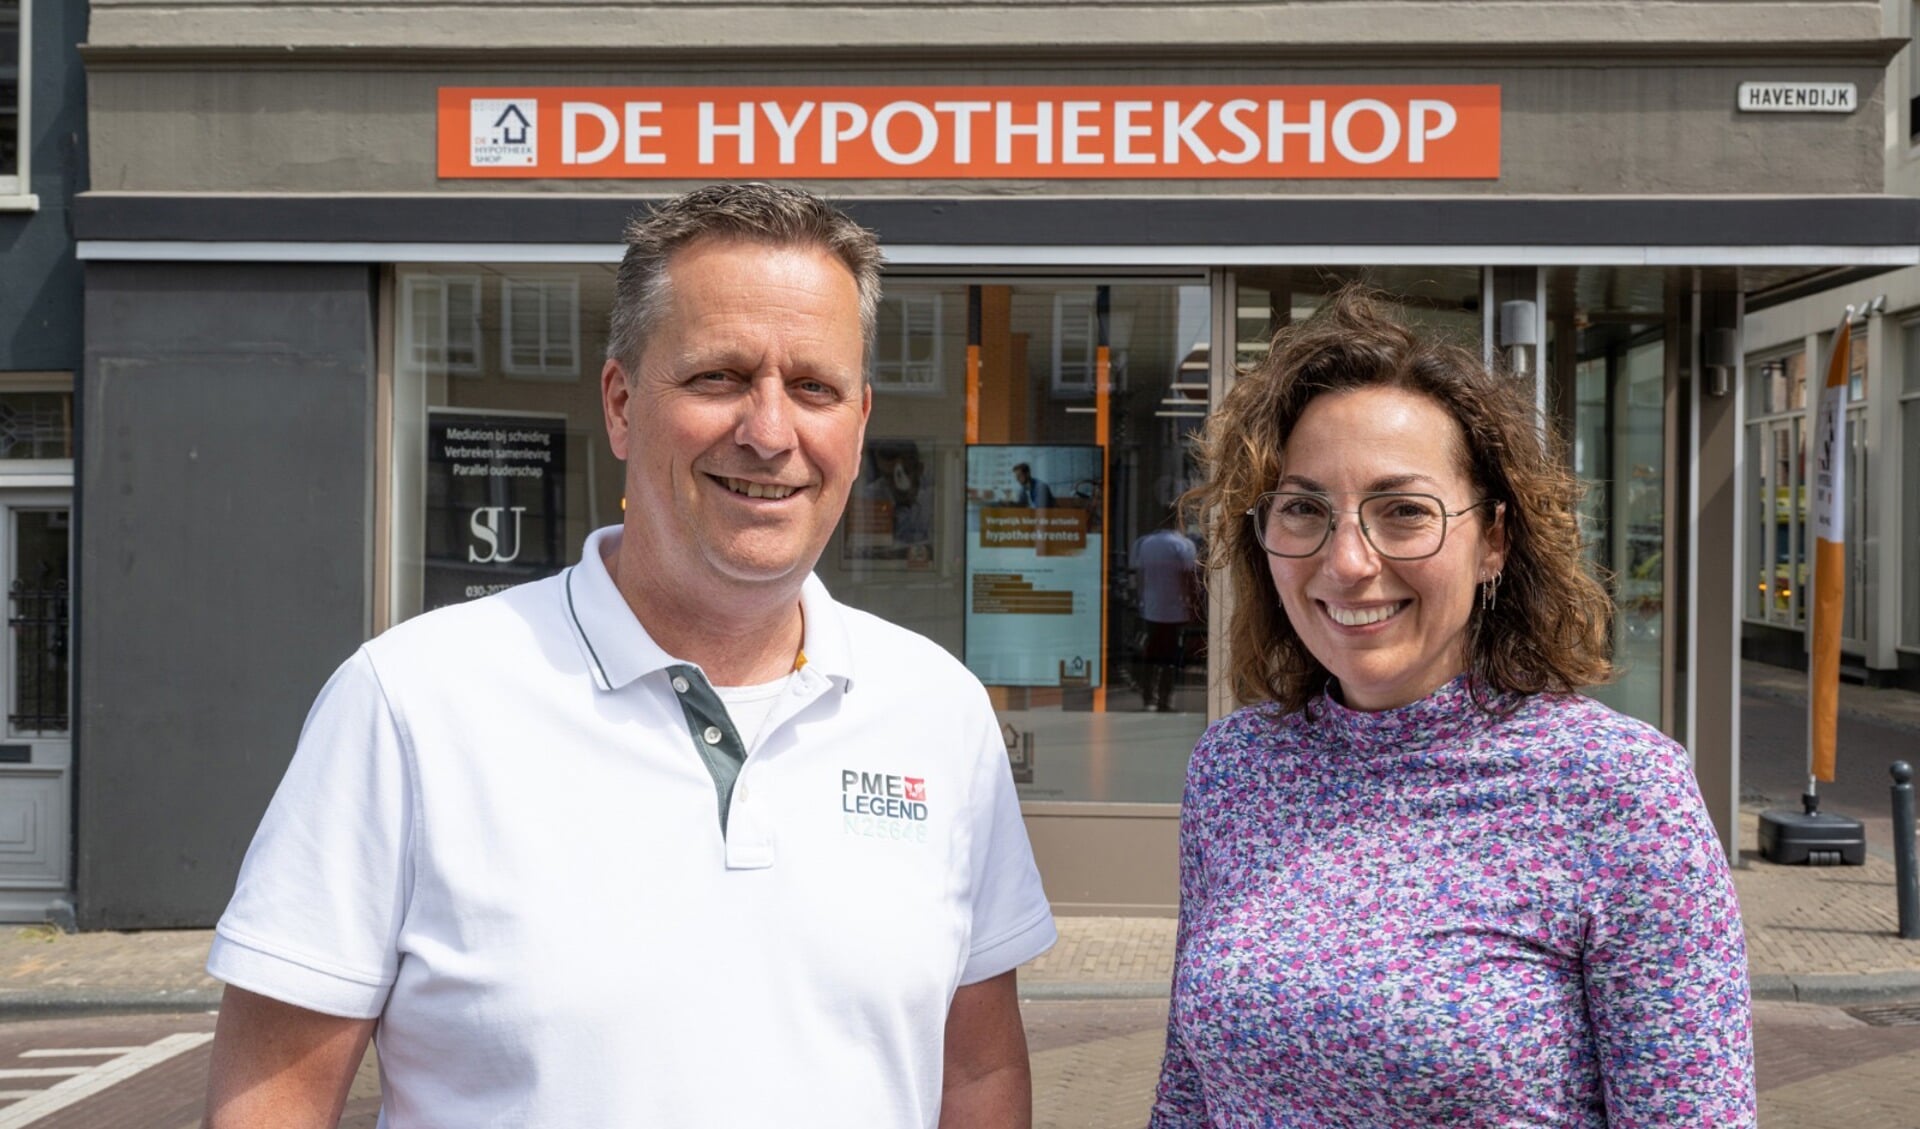 Gert de Boon en Marieke de JongeHypotheekshop Gorinchemwww.hypotheekshop.nl/gorinchem 0183 – 89 30 10gorinchem1295@hypotheekshop.nl 